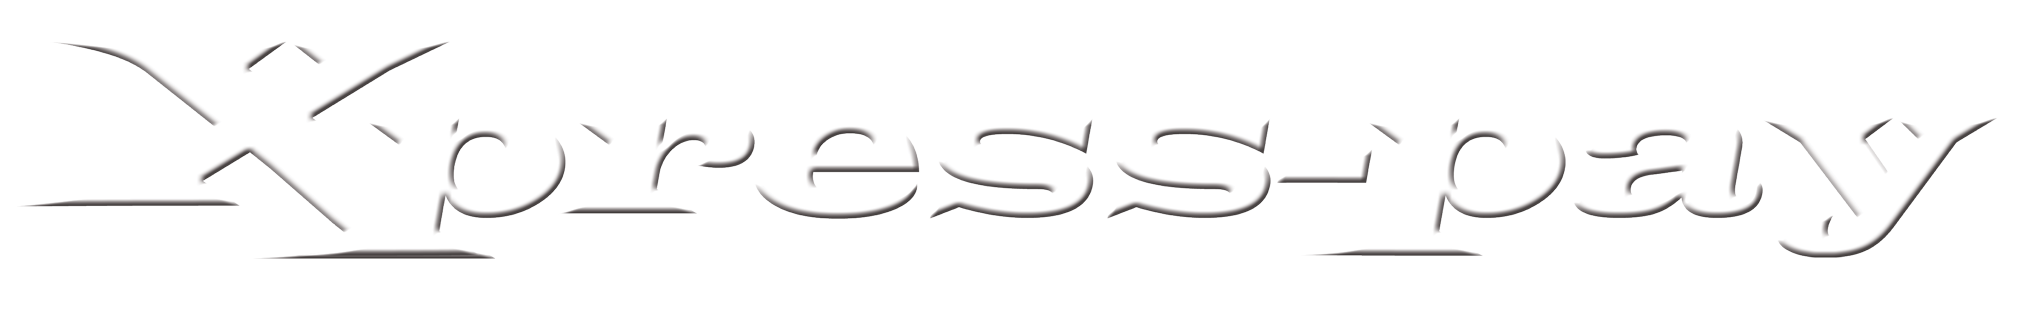 Xpress-pay logo